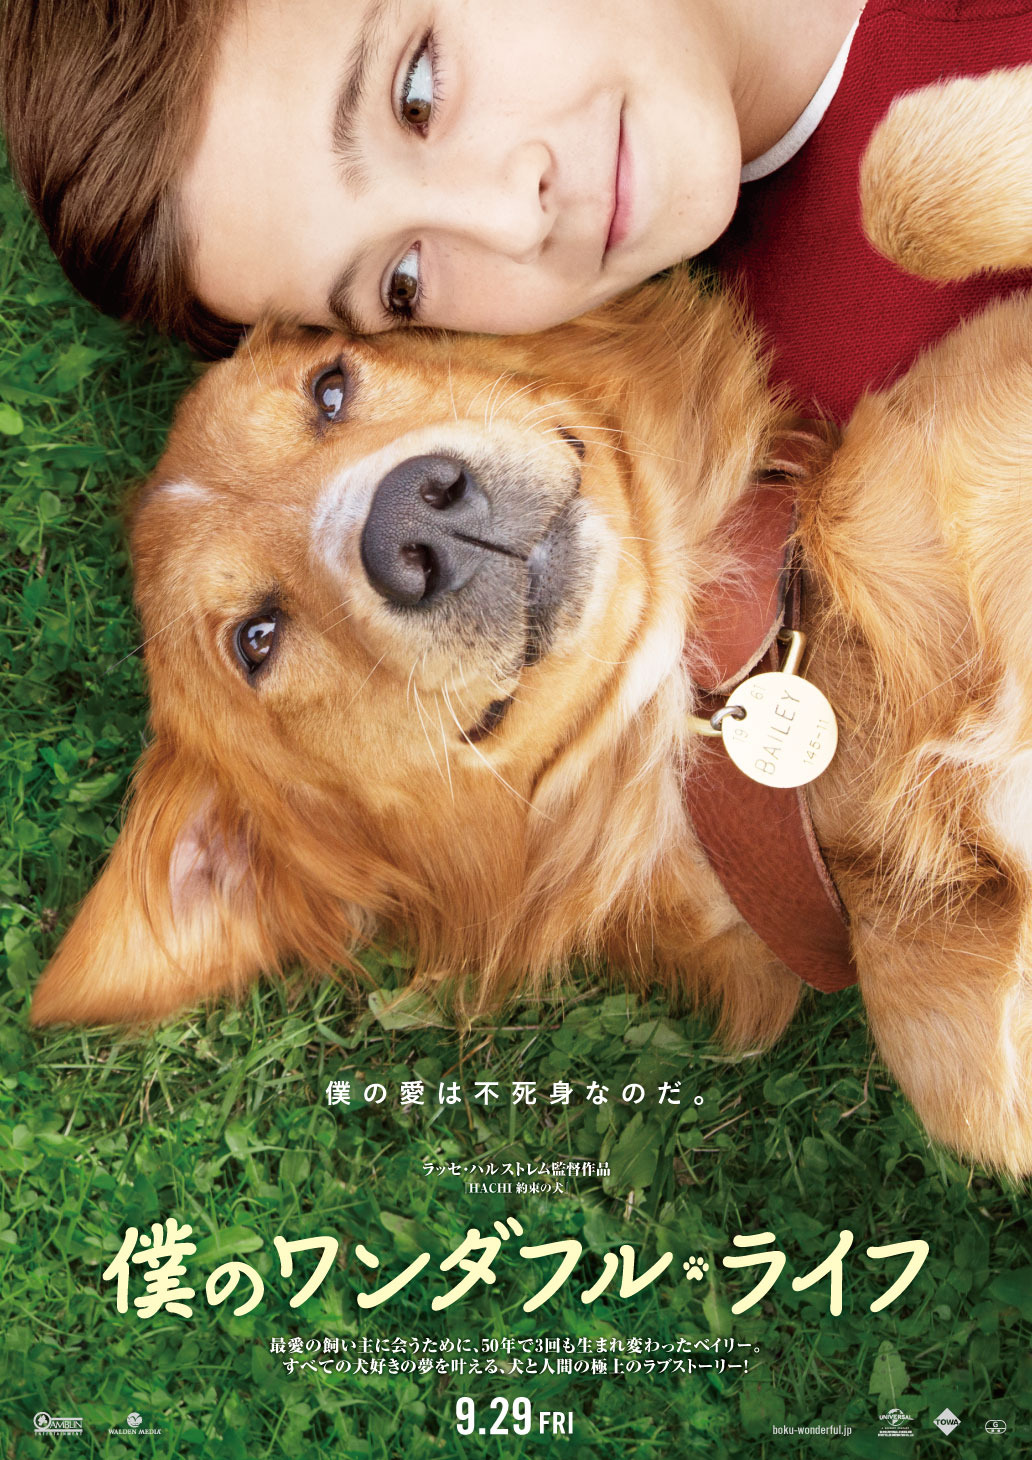 3度も生まれ変わった 犬と少年のラブストーリー 僕のワンダフル ライフ 公開へ Cinemacafe Net